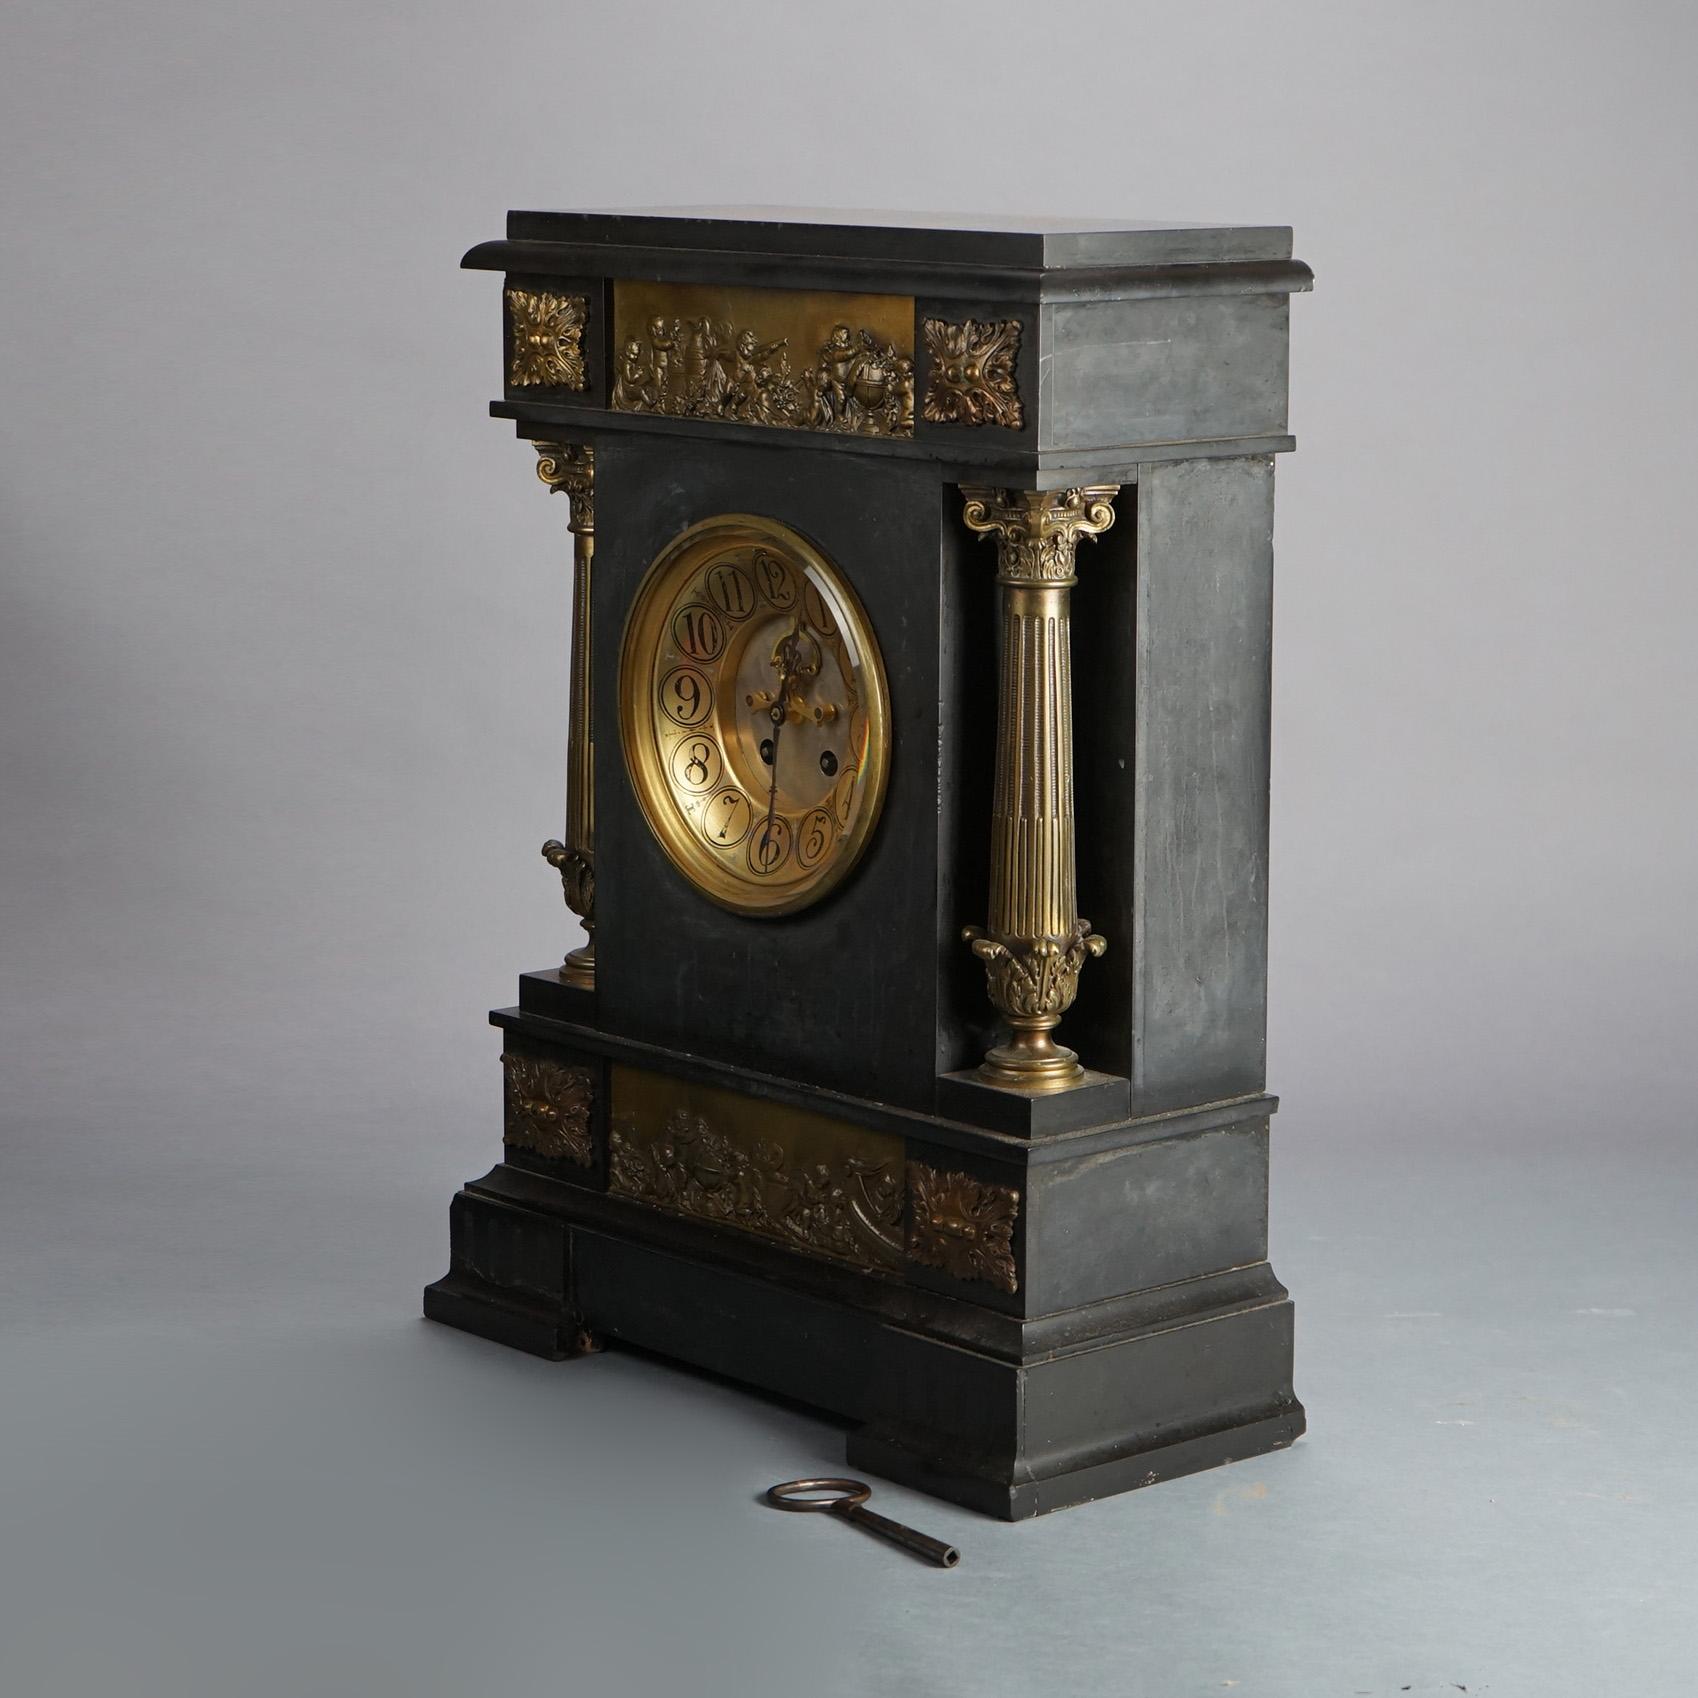 Antike neoklassische Second Empire Mantle Clock aus schwarzem Marmor mit Bronzesäulen und Amor-Szene in Relief Fries & Sockel Plaques C1880

Maße: 34''H x 74,5''B x 20''T

